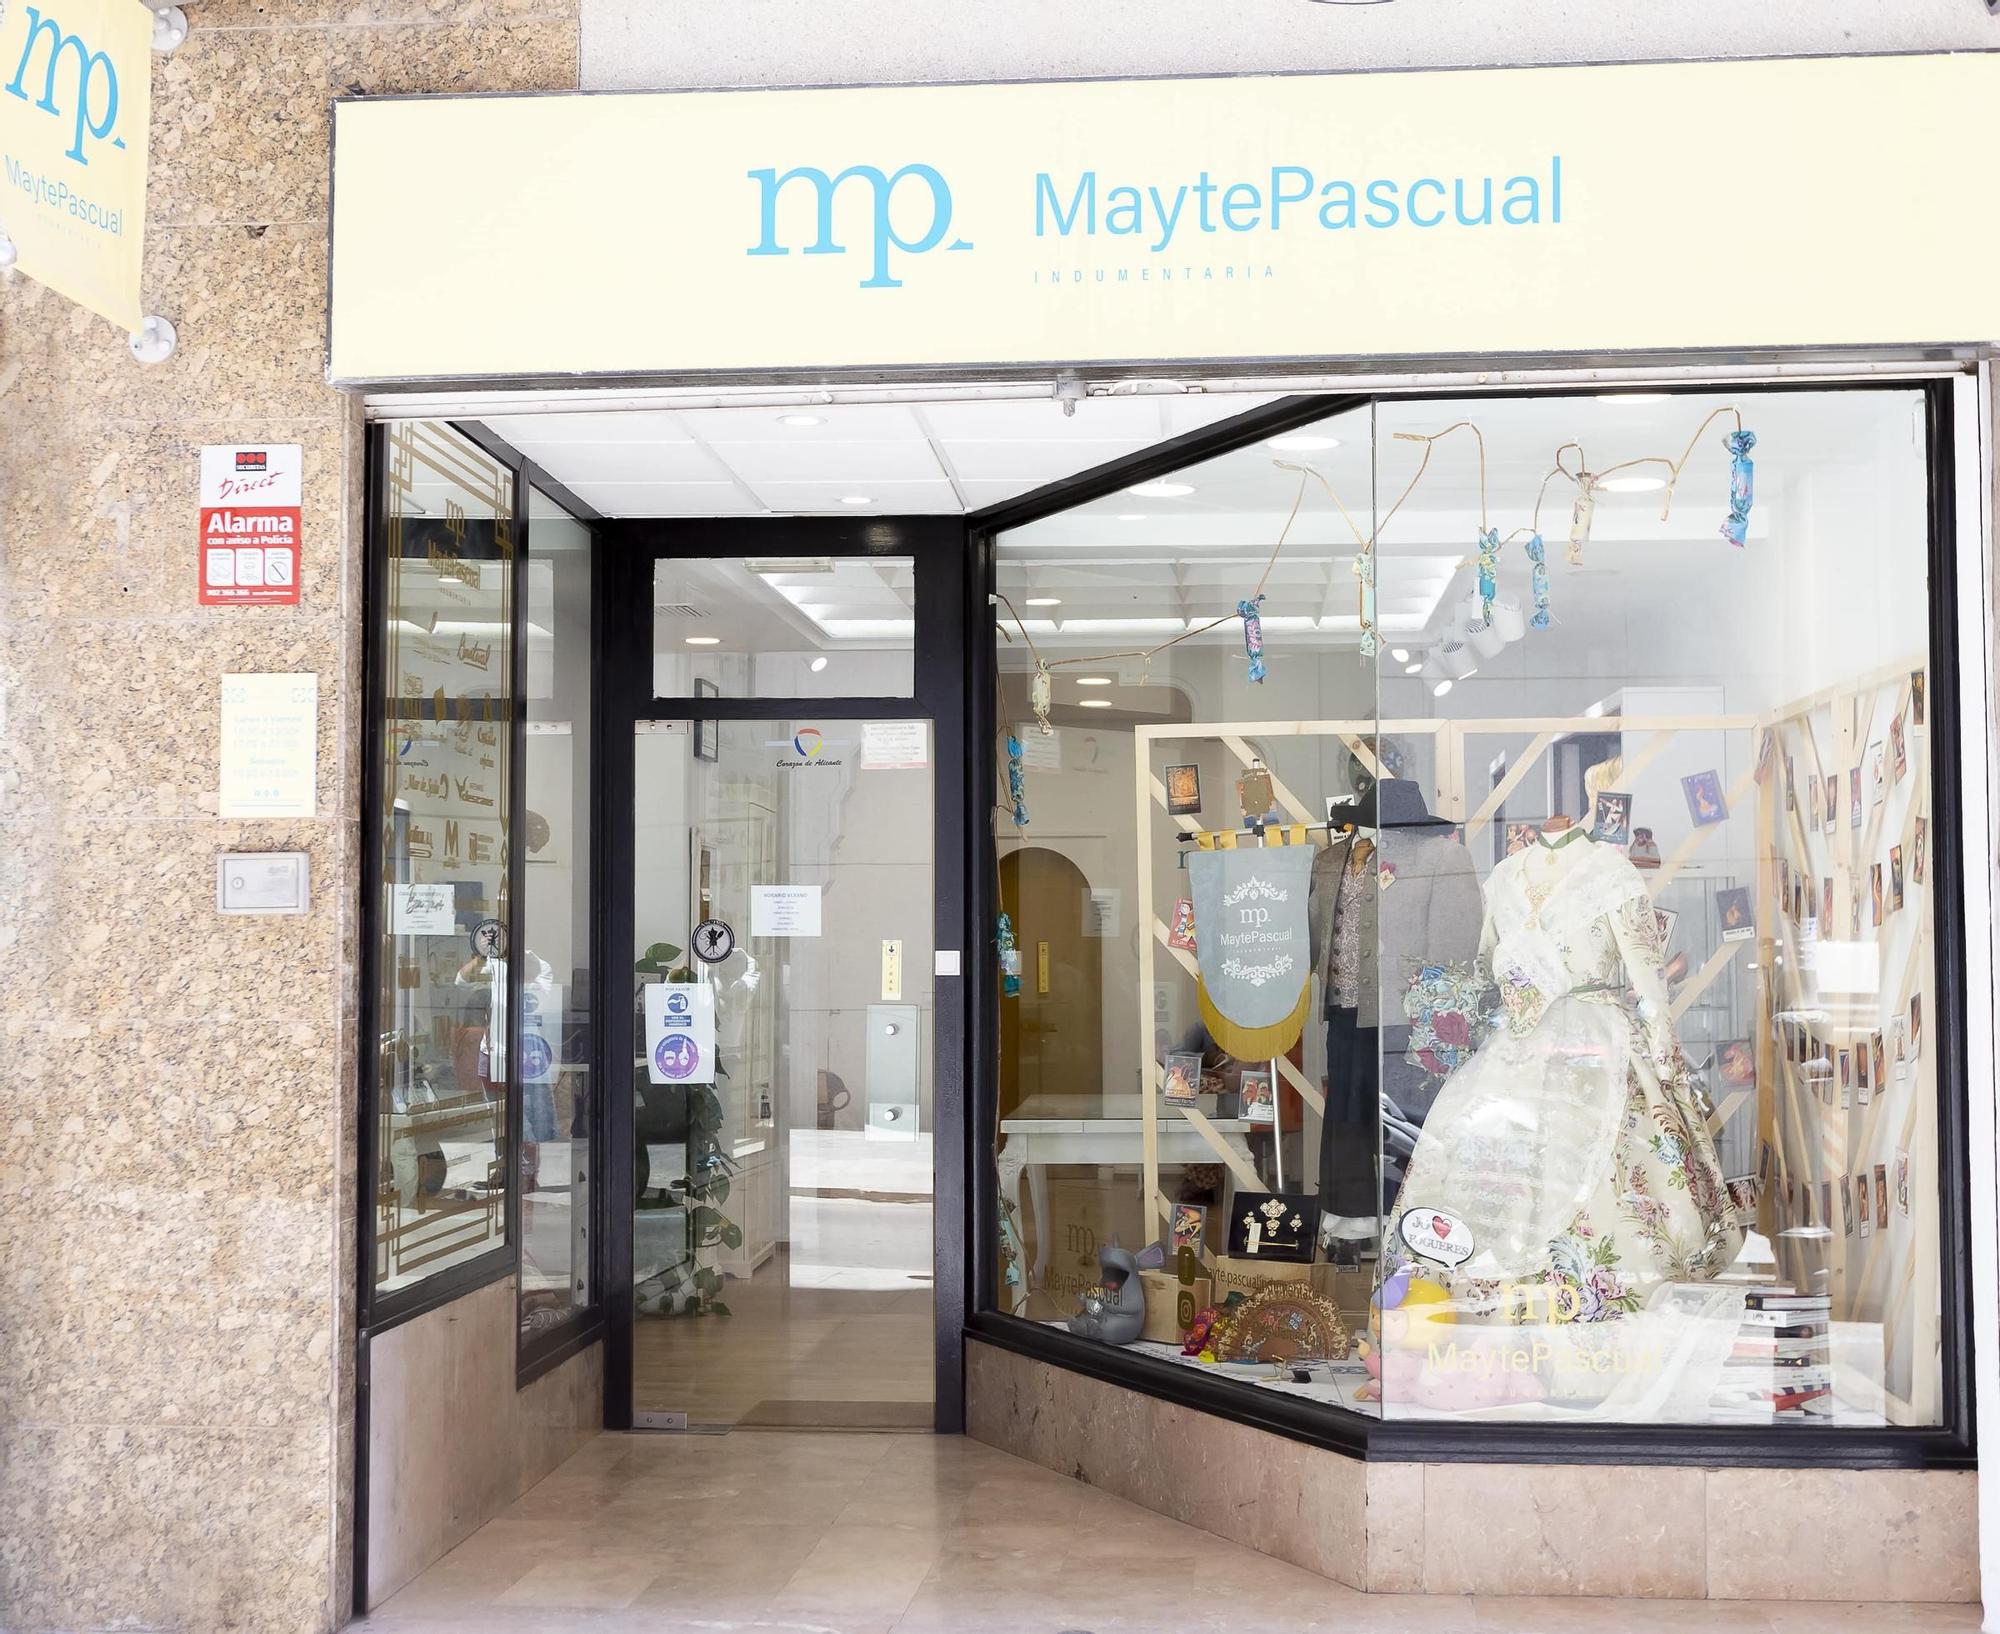 La indumentarista Mayte Pascual comercializa un estrecho de seda exclusivo en Alicante